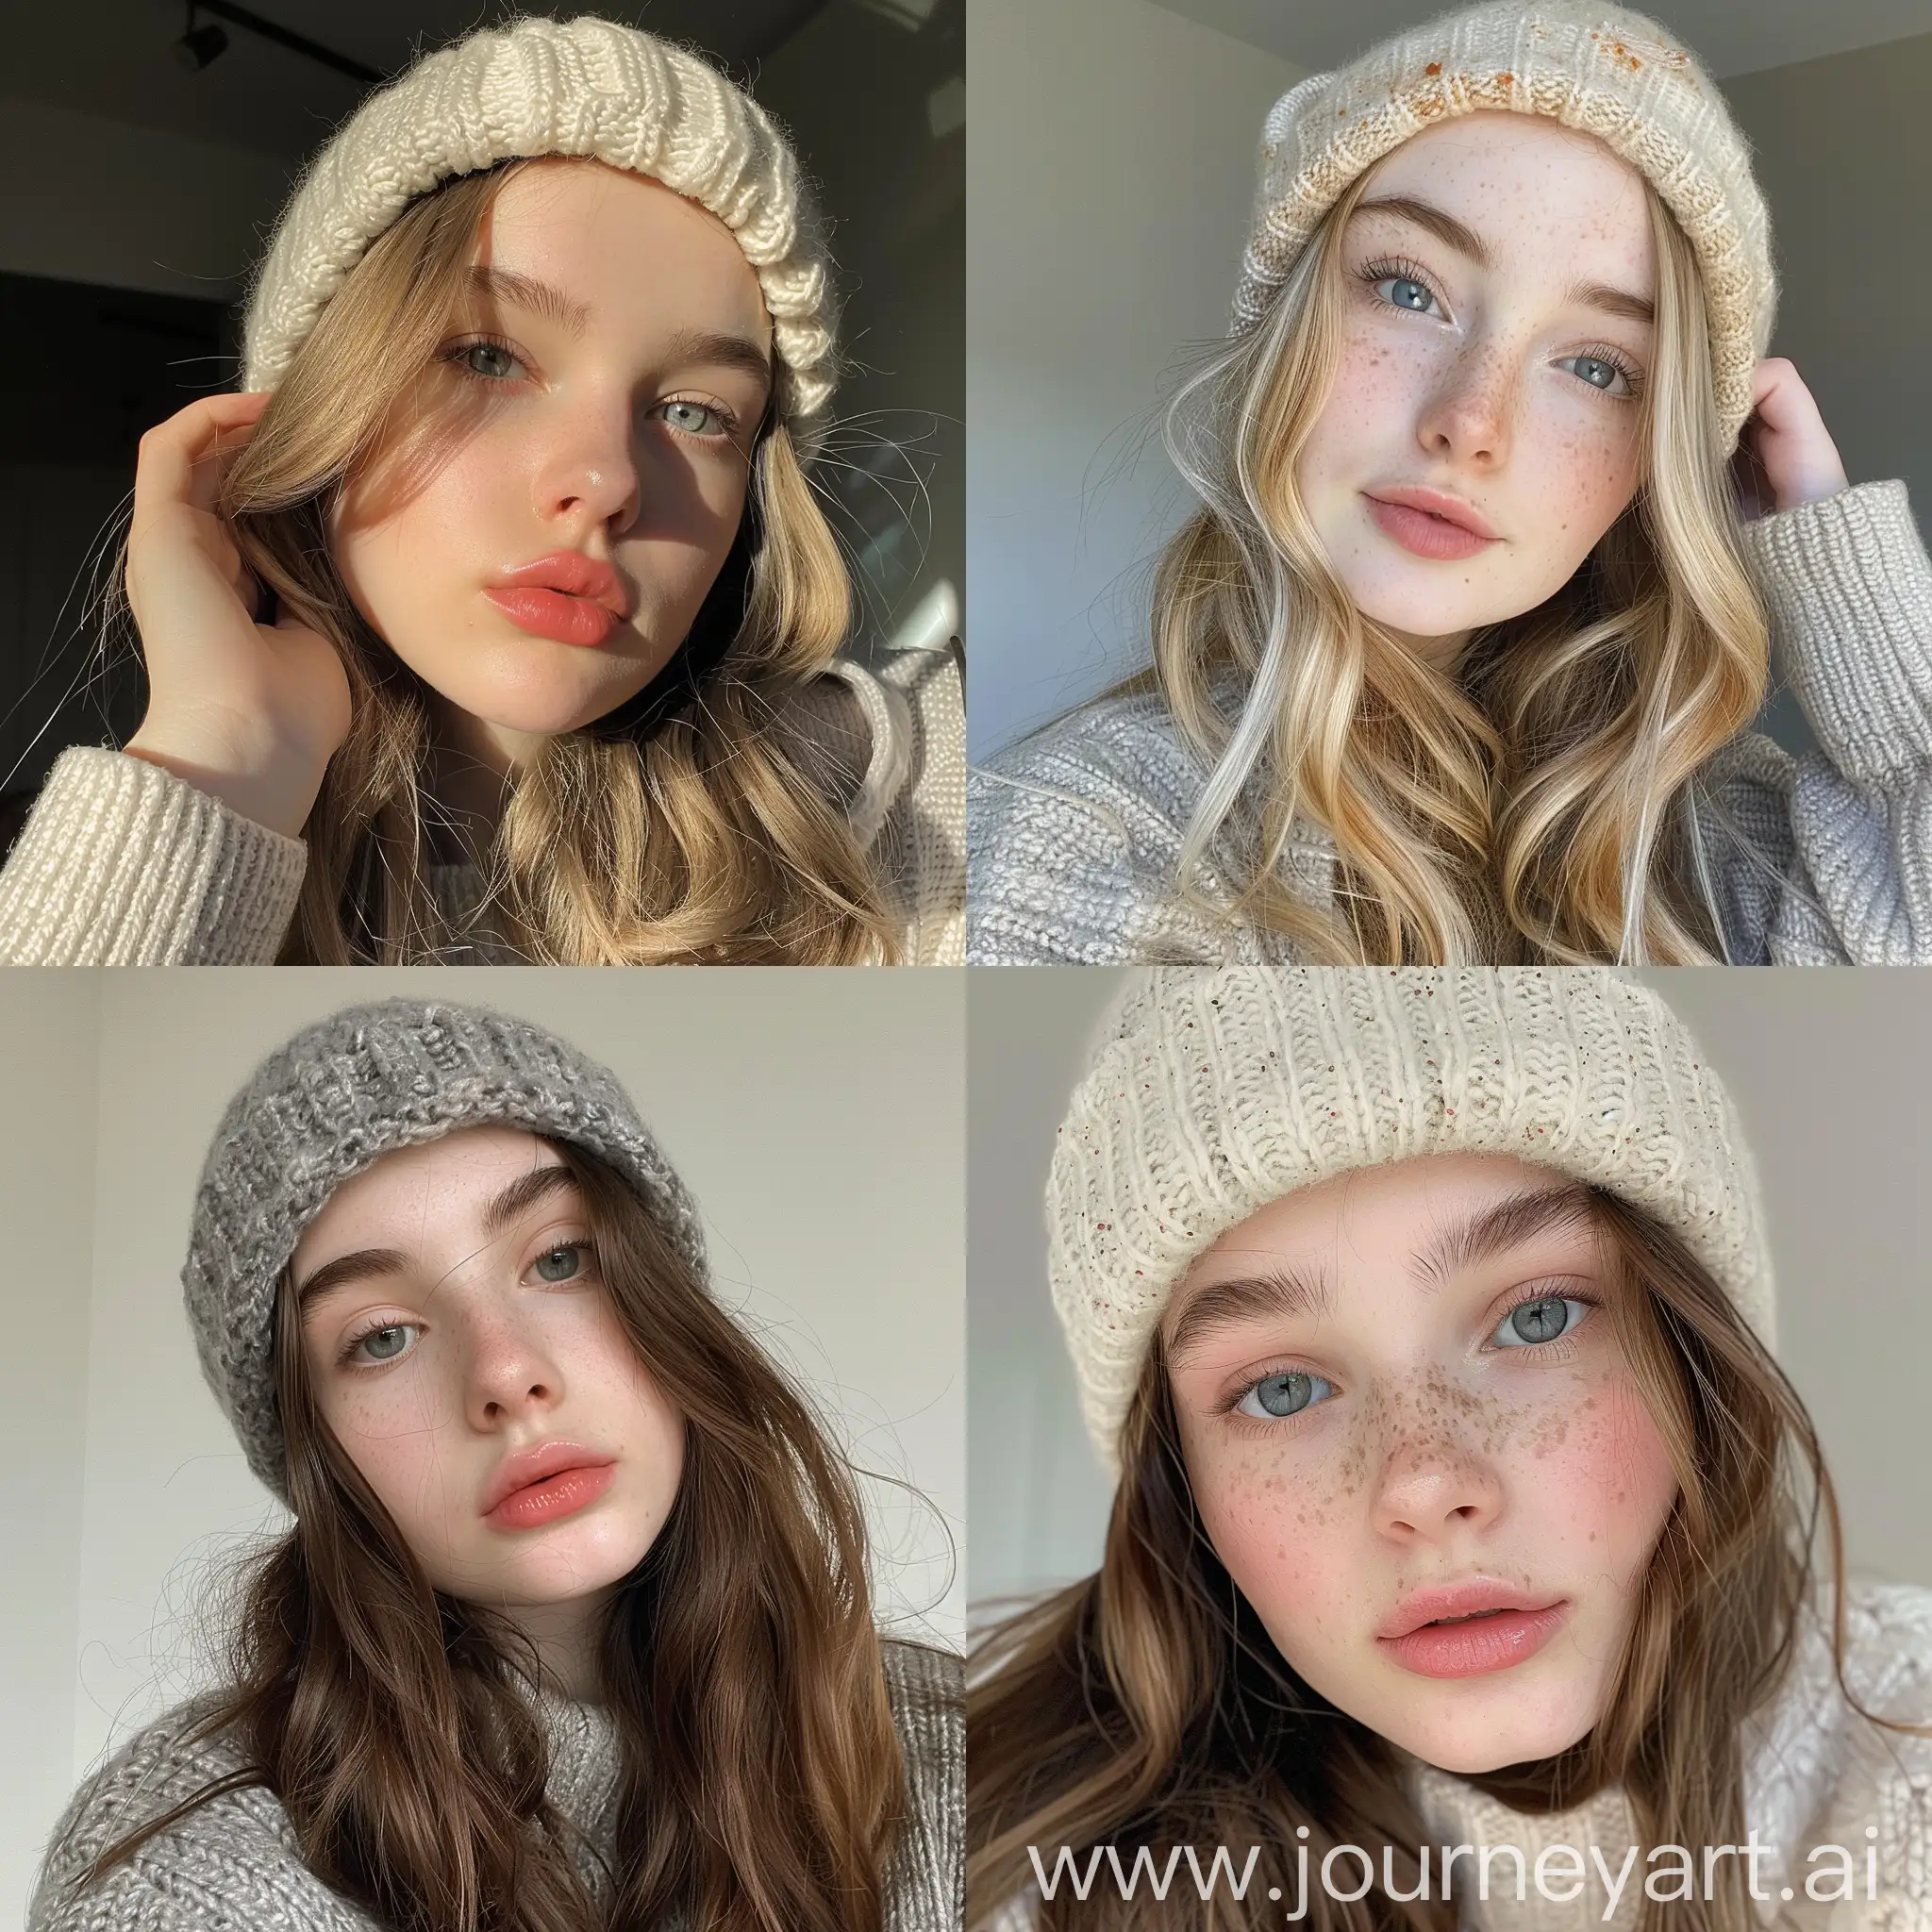 Aesthetic Instagram selfie of a teenage girl influencer, beanie